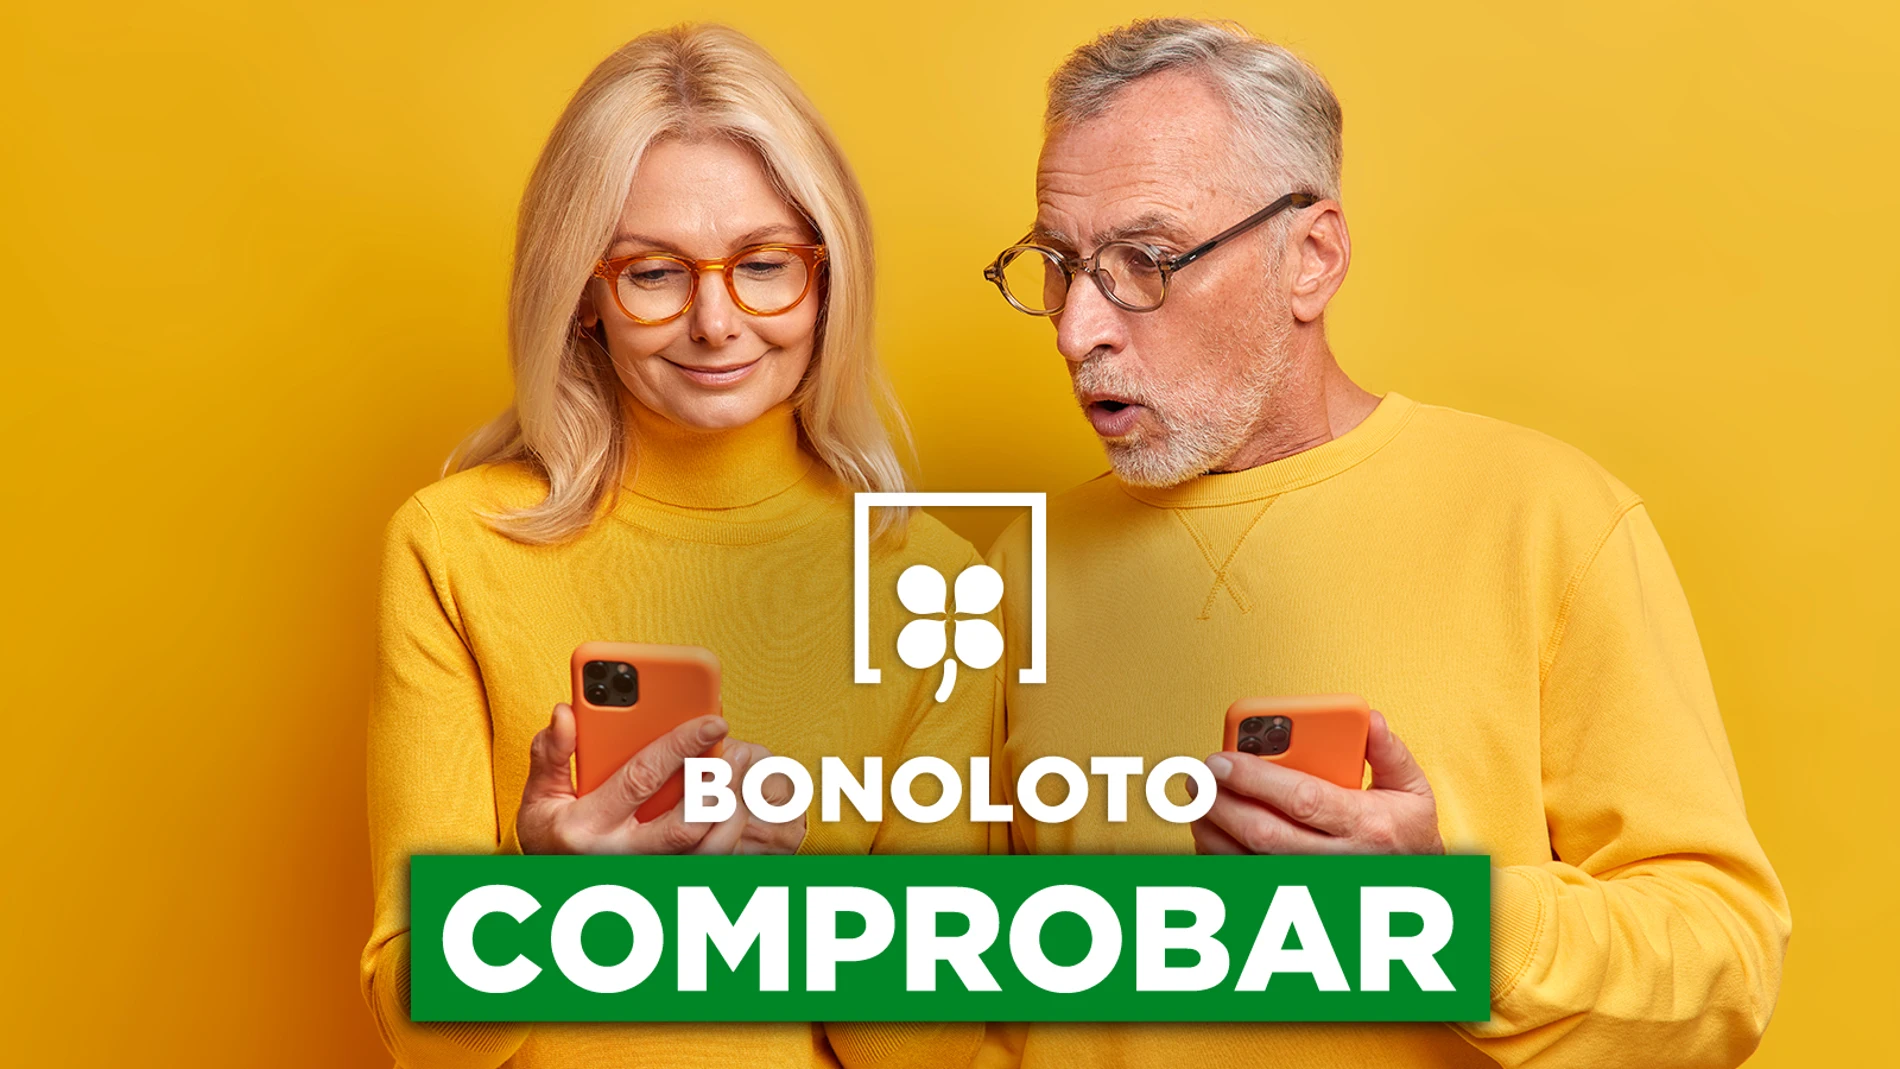 Bonoloto: comprobar hoy, viernes 19 de agosto de 2022